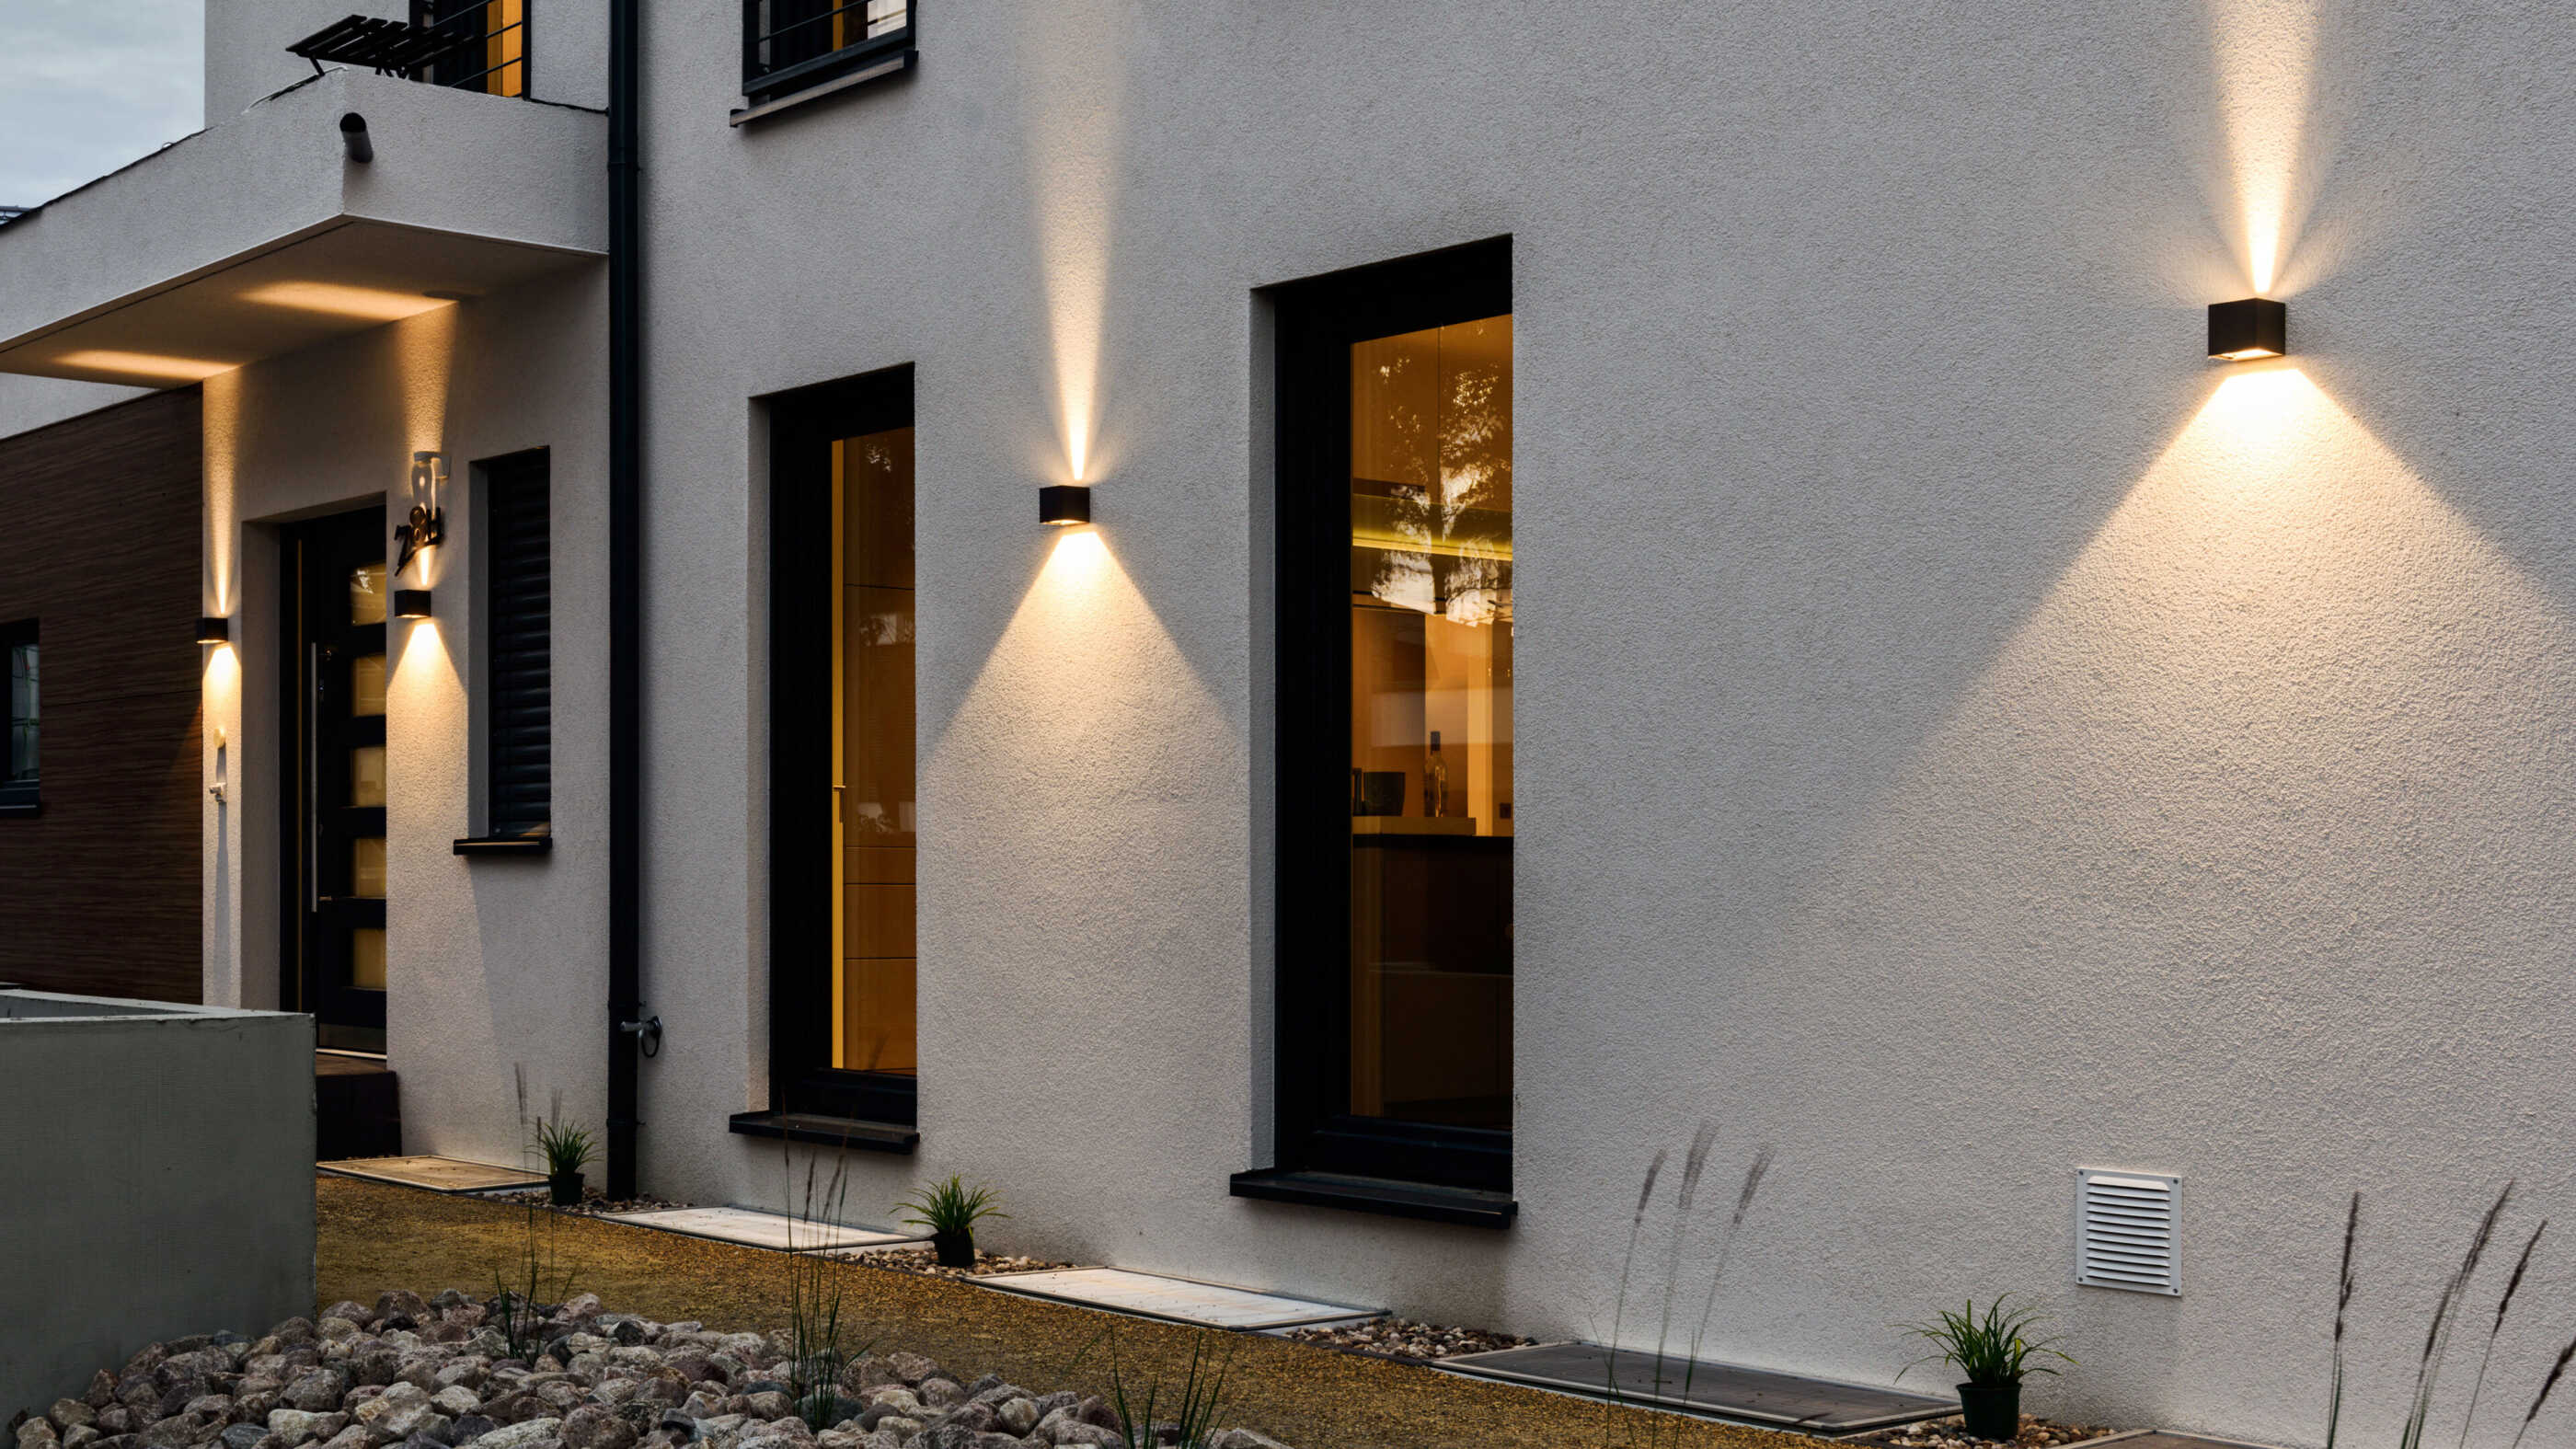 Eine Hausfassade wird von zweiseitig strahlenden Wandleuchten beleuchtet. Links im Bild ist die Haustür zu sehen, die von zwei Wandleuchten eingerahmt wird. (Foto: Prediger Lichtberater)